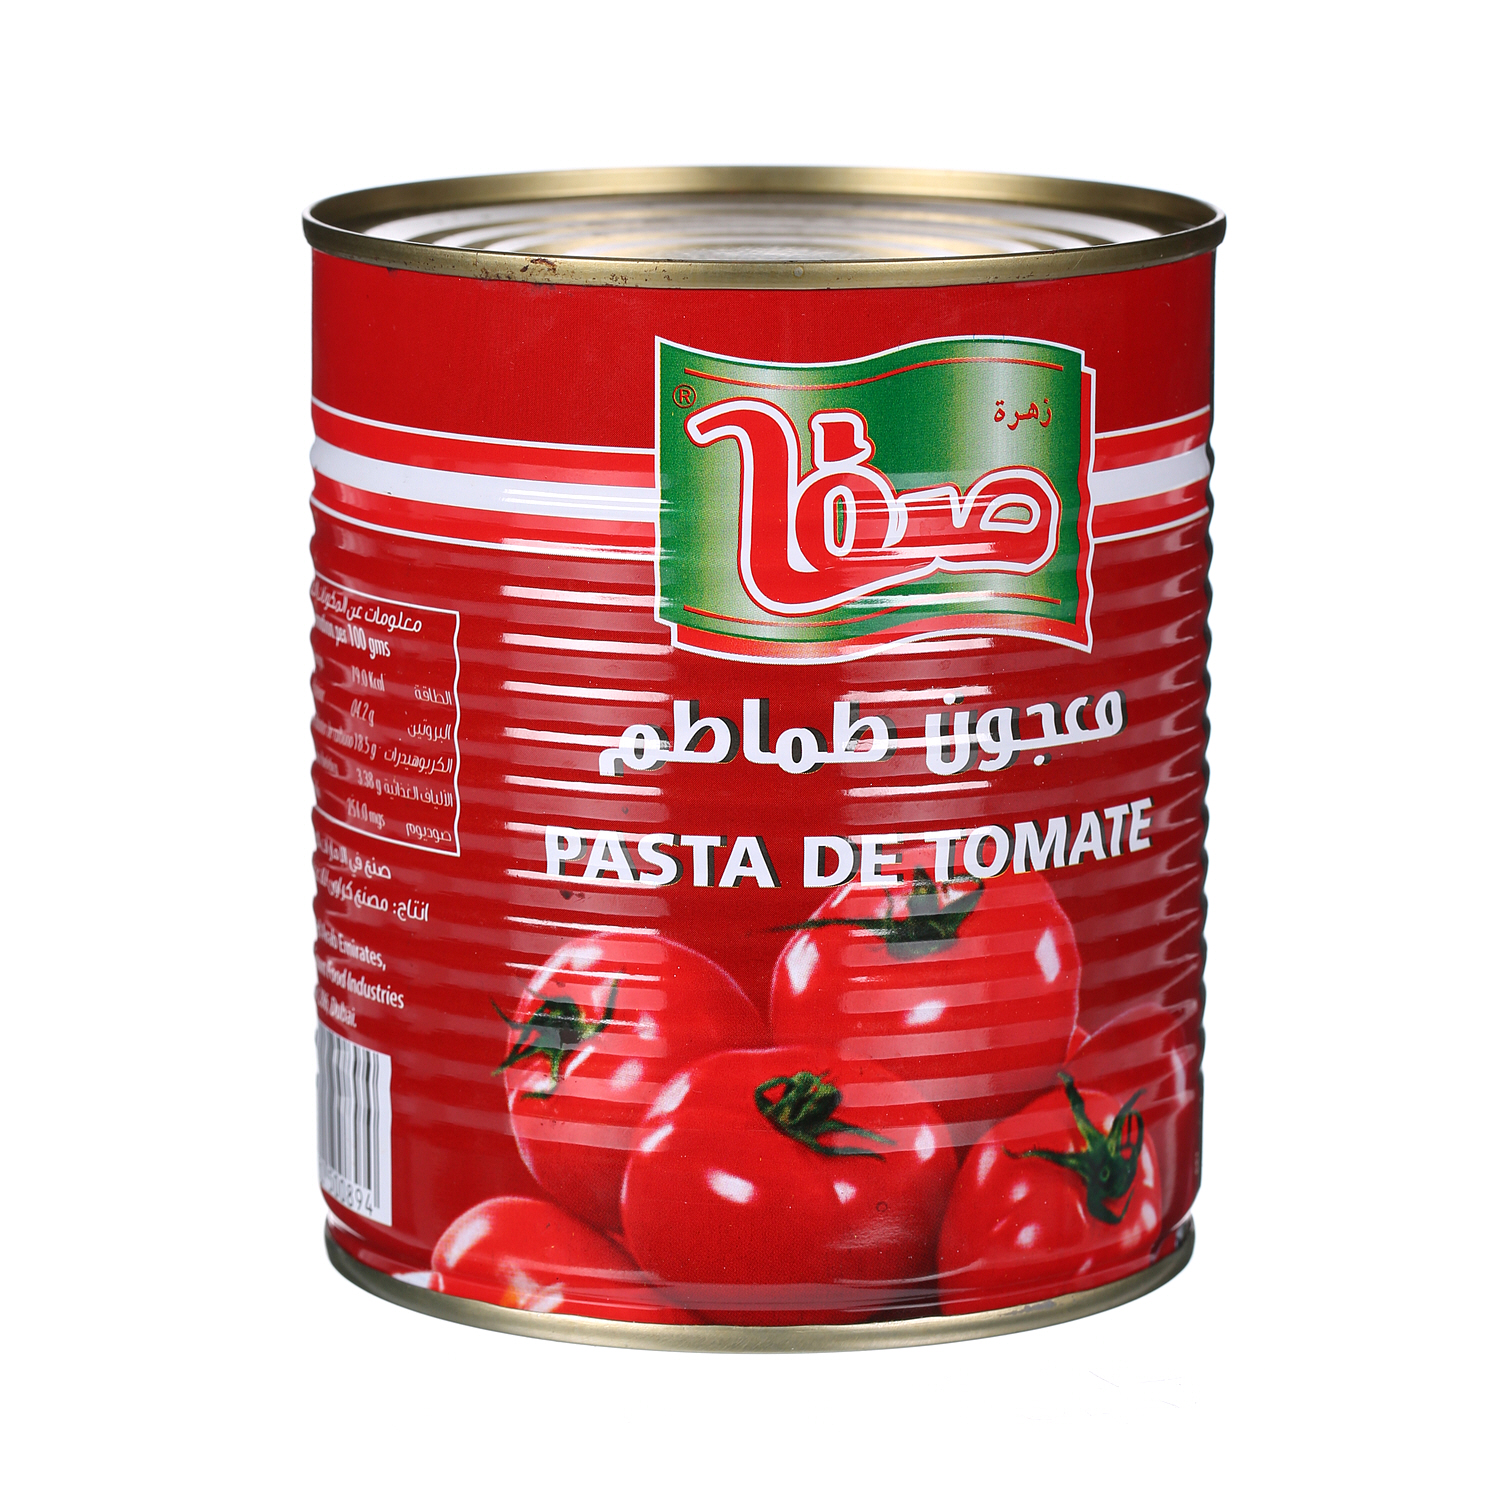 Safa Tomato Paste 850 g